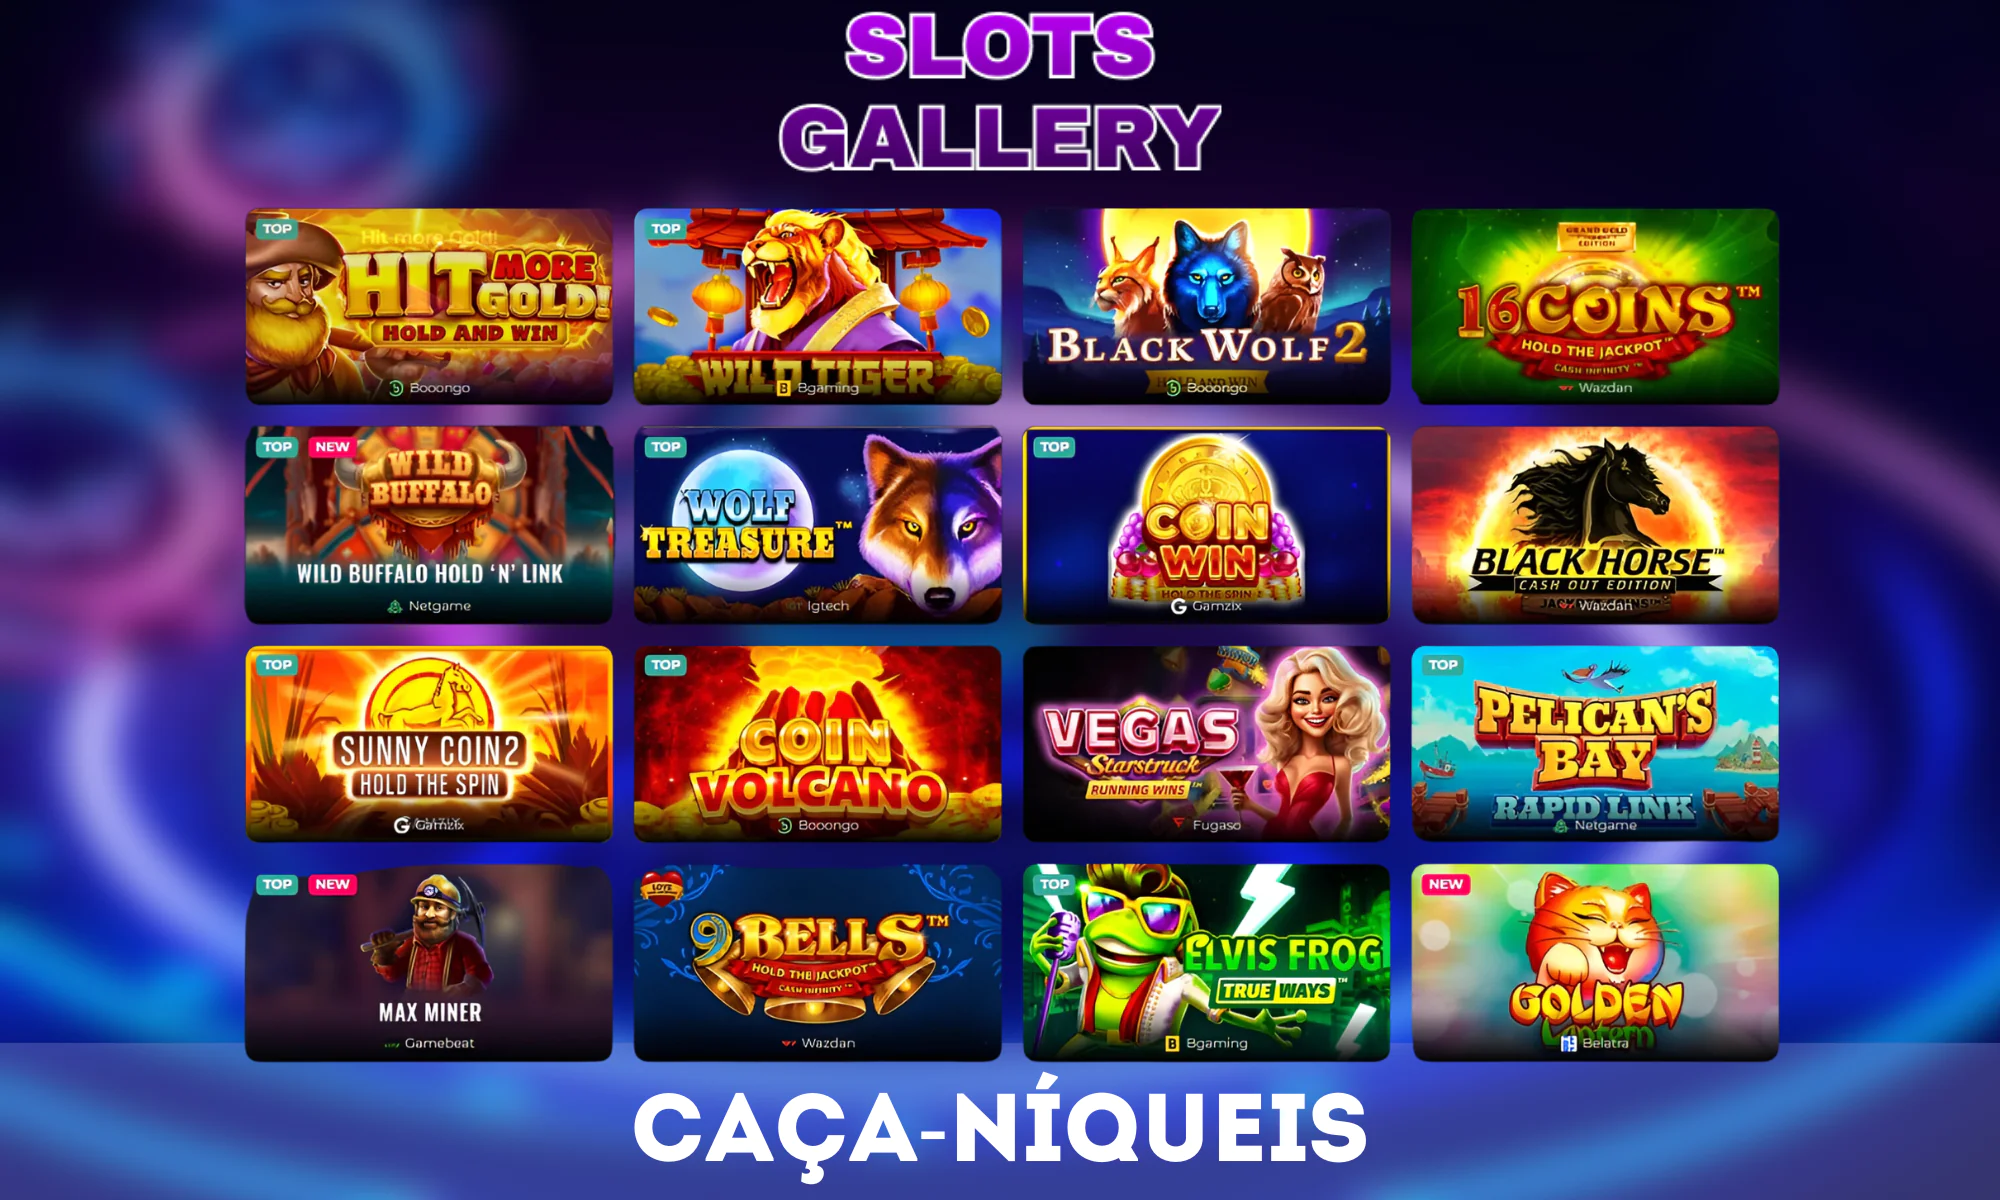 O Slots Gallery Casino tem mais de 4.000 máquinas caça-níqueis disponíveis